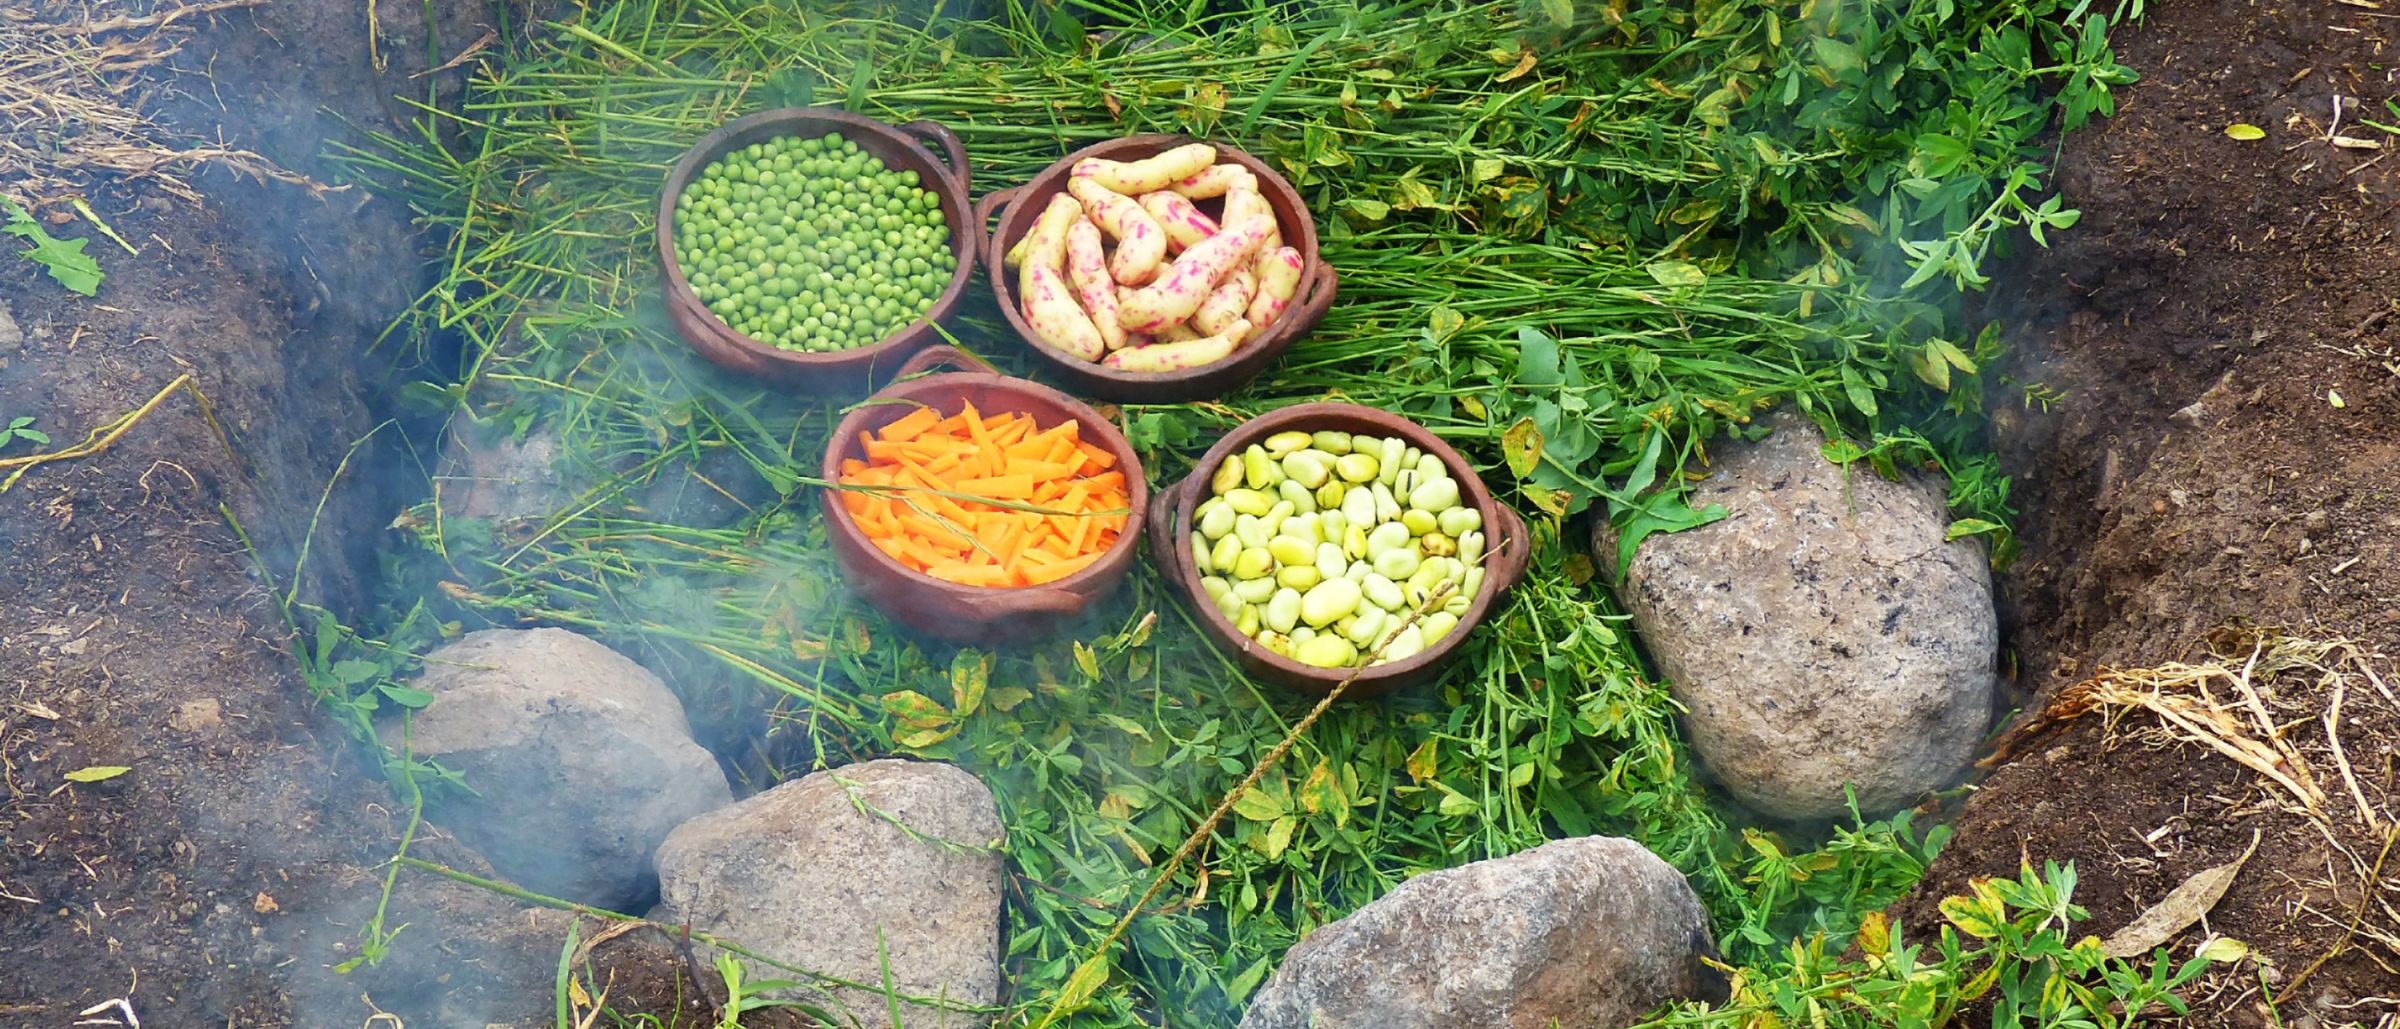 Kochen auf erhitzten Steinen, Ritual und Essen der Pachamanca